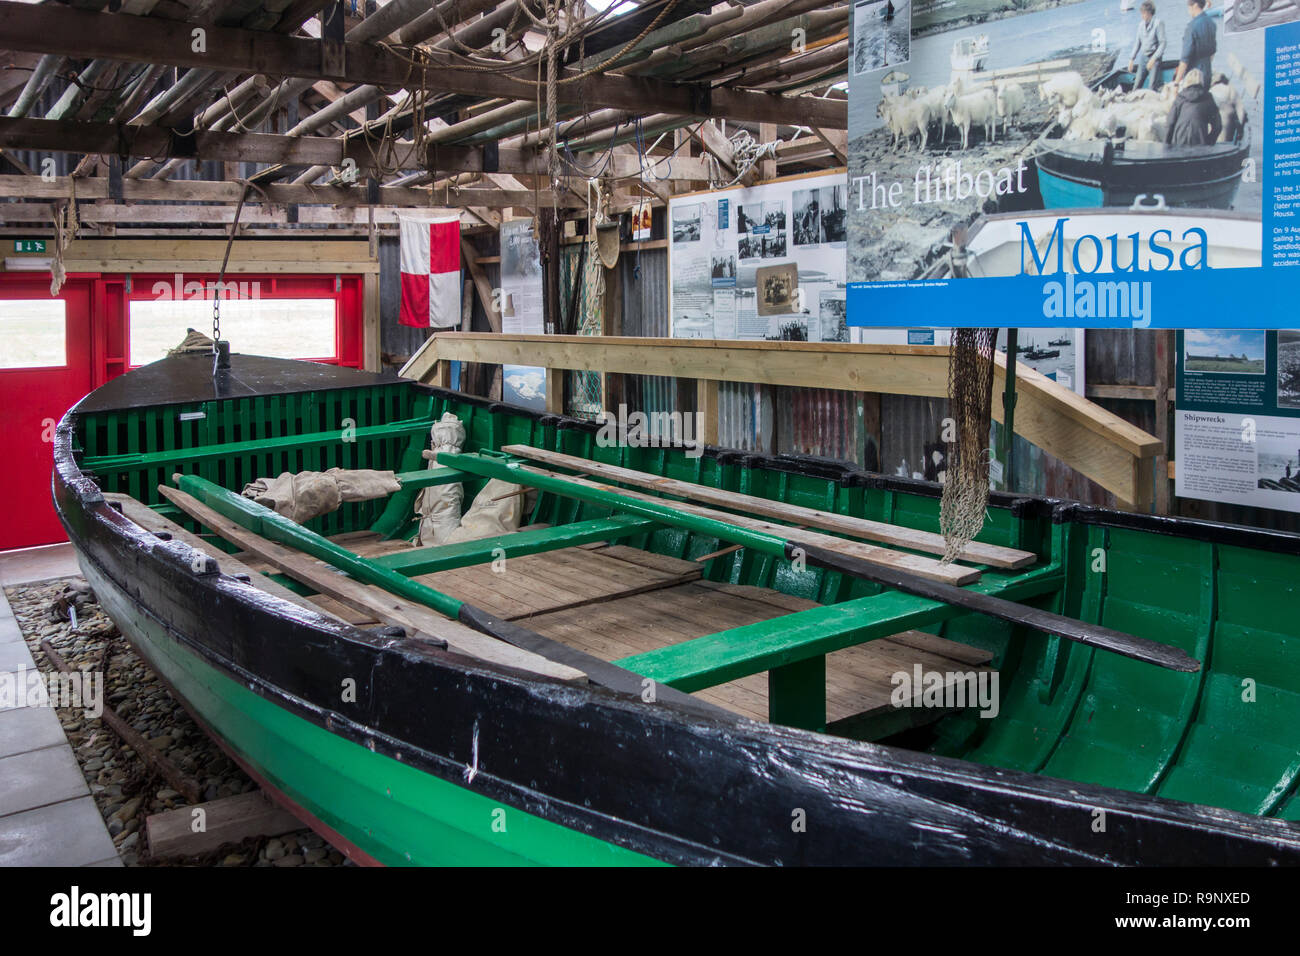 El restaurado Mousa flitboat / revolotean en barco en el centro interpretativo en Sandwick Sandsayre, Islas Shetland (Escocia, Reino Unido) Foto de stock